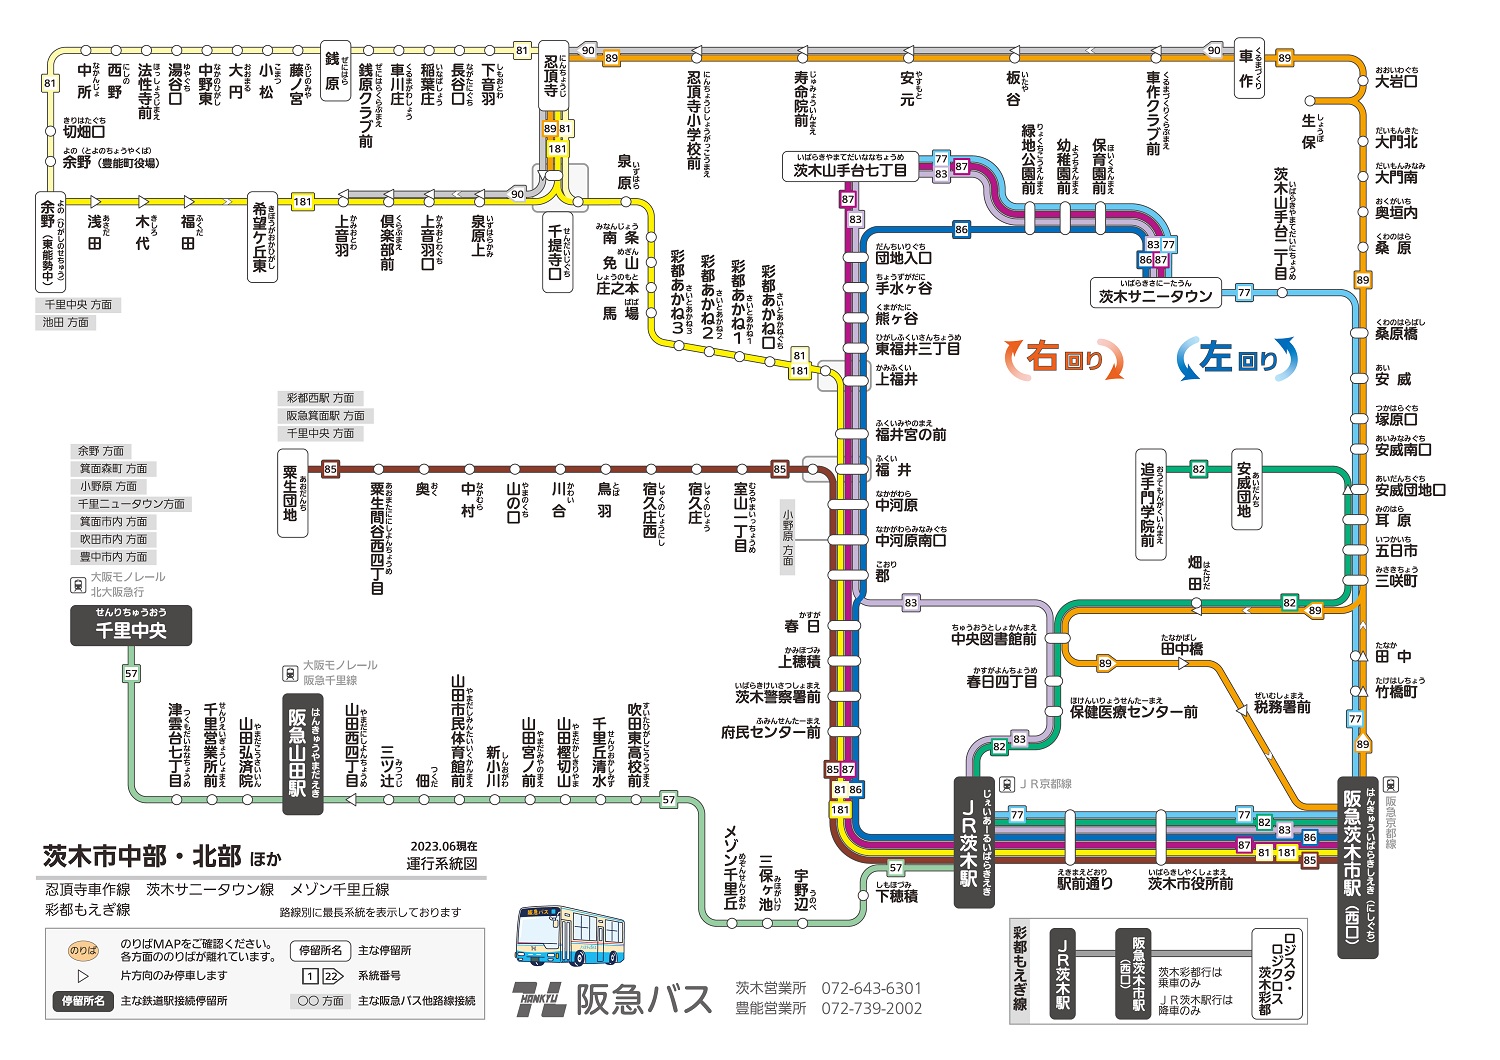 運行系統図 茨木営業所2 豊能営業所 路線バス 阪急バス